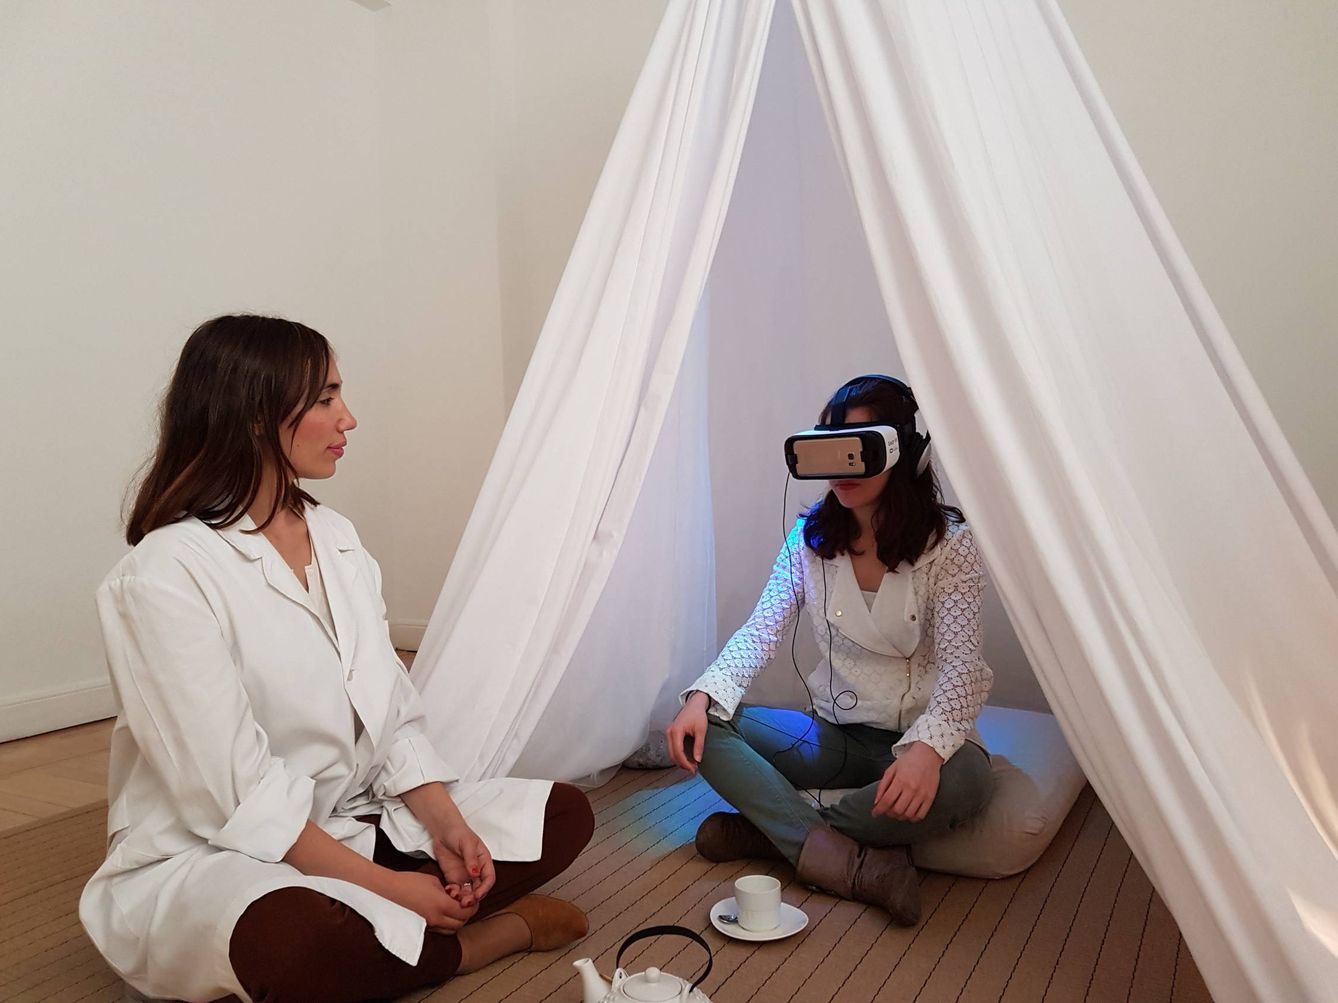 La realidad virtual se aplica cada vez más en el sector de la salud. (IJQ)